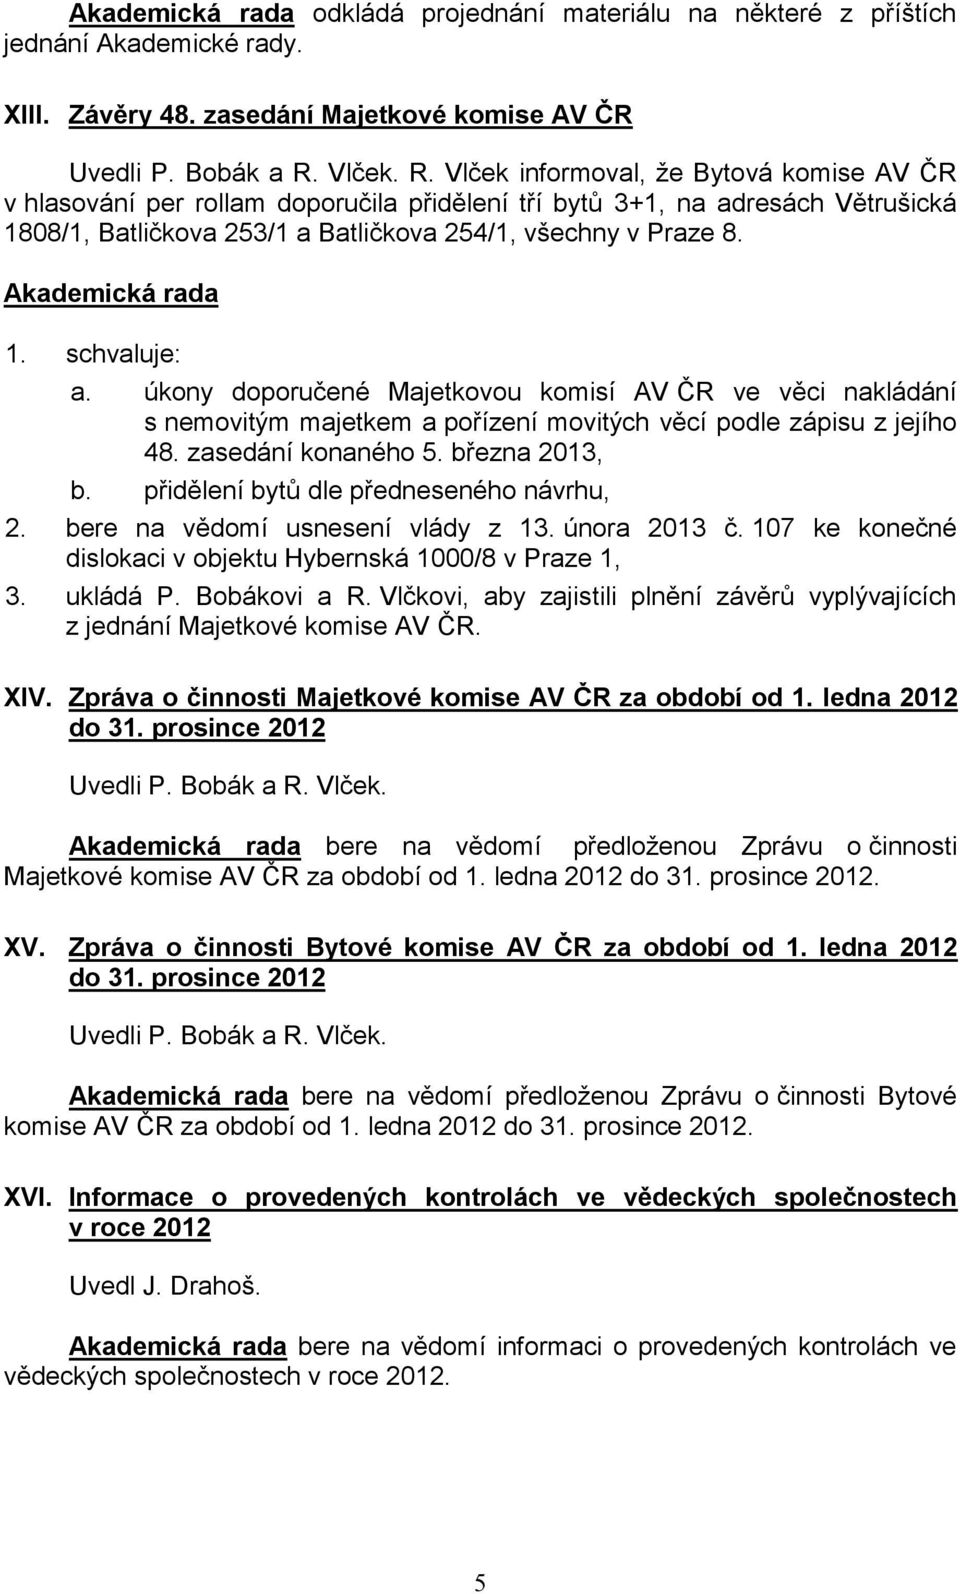 úkony doporučené Majetkovou komisí AV ČR ve věci nakládání s nemovitým majetkem a pořízení movitých věcí podle zápisu z jejího 48. zasedání konaného 5. března 2013, b.